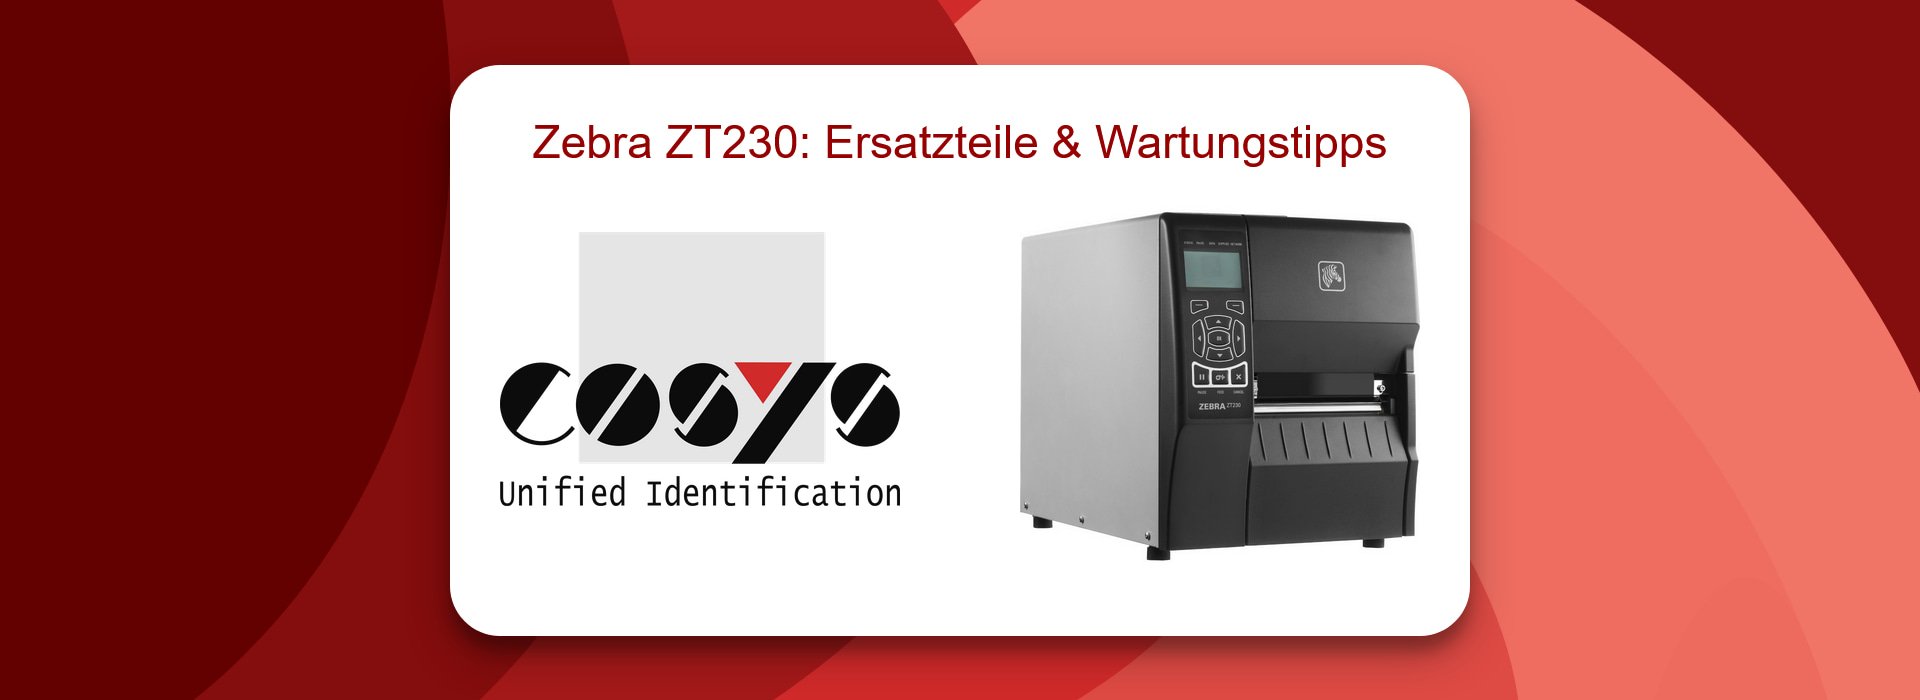 Zebra ZT230 Support: Druckkopfprobleme lösen